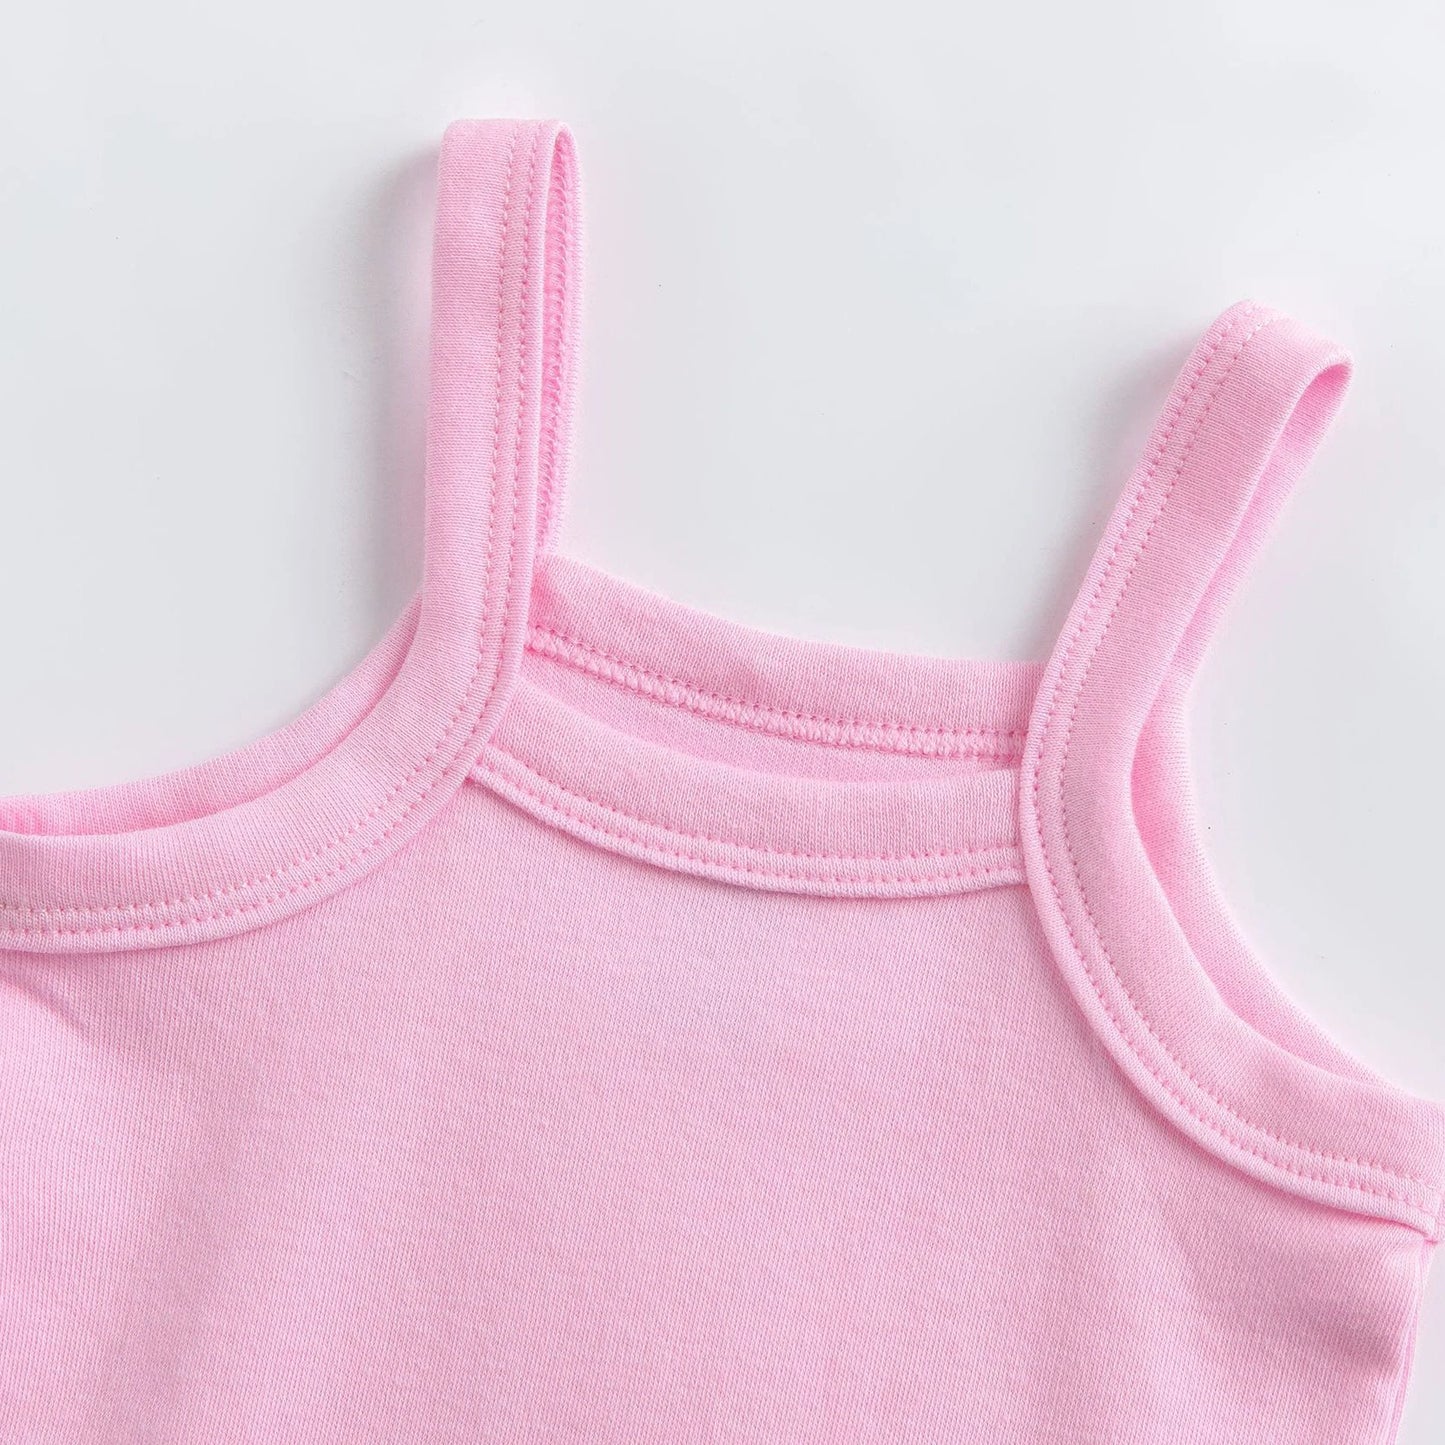 3PCS/Lot Newborn Baby Girls Clothes Boy Rompers Vest Jumpsuit Bodysuits 0-48M Summer Pure Cotton Solid Color